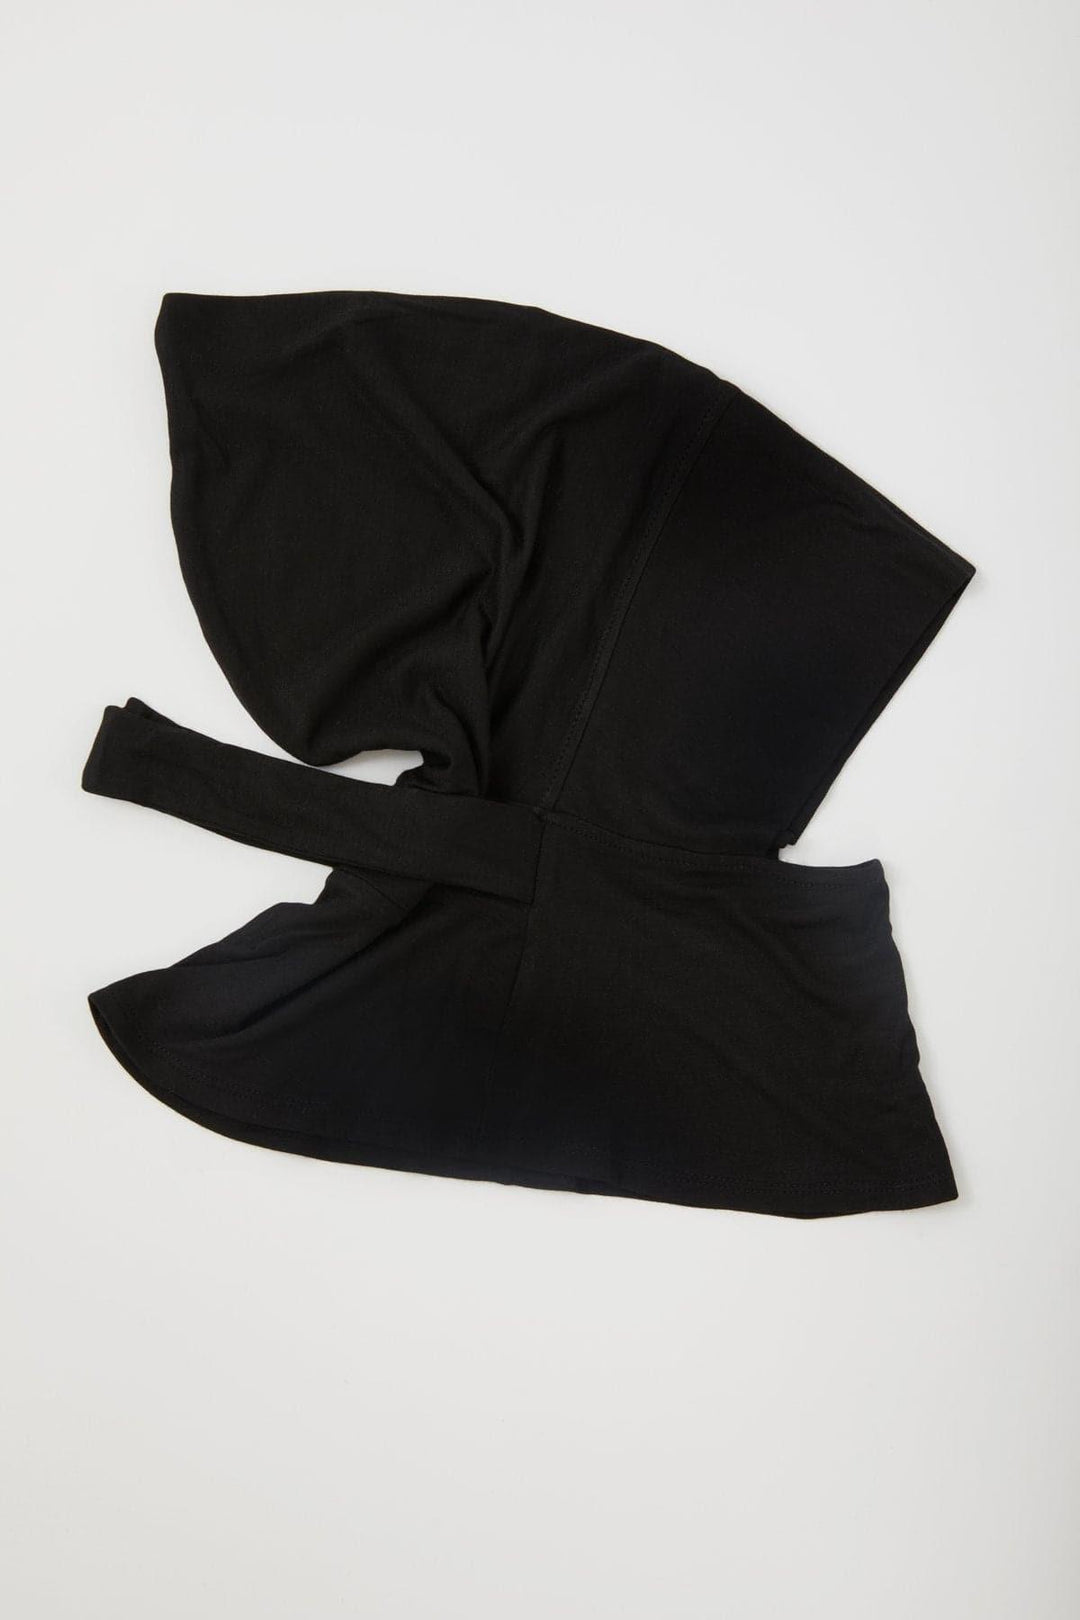 Mia Mini Neck Cover Hijab- Black – Zahraa The Label